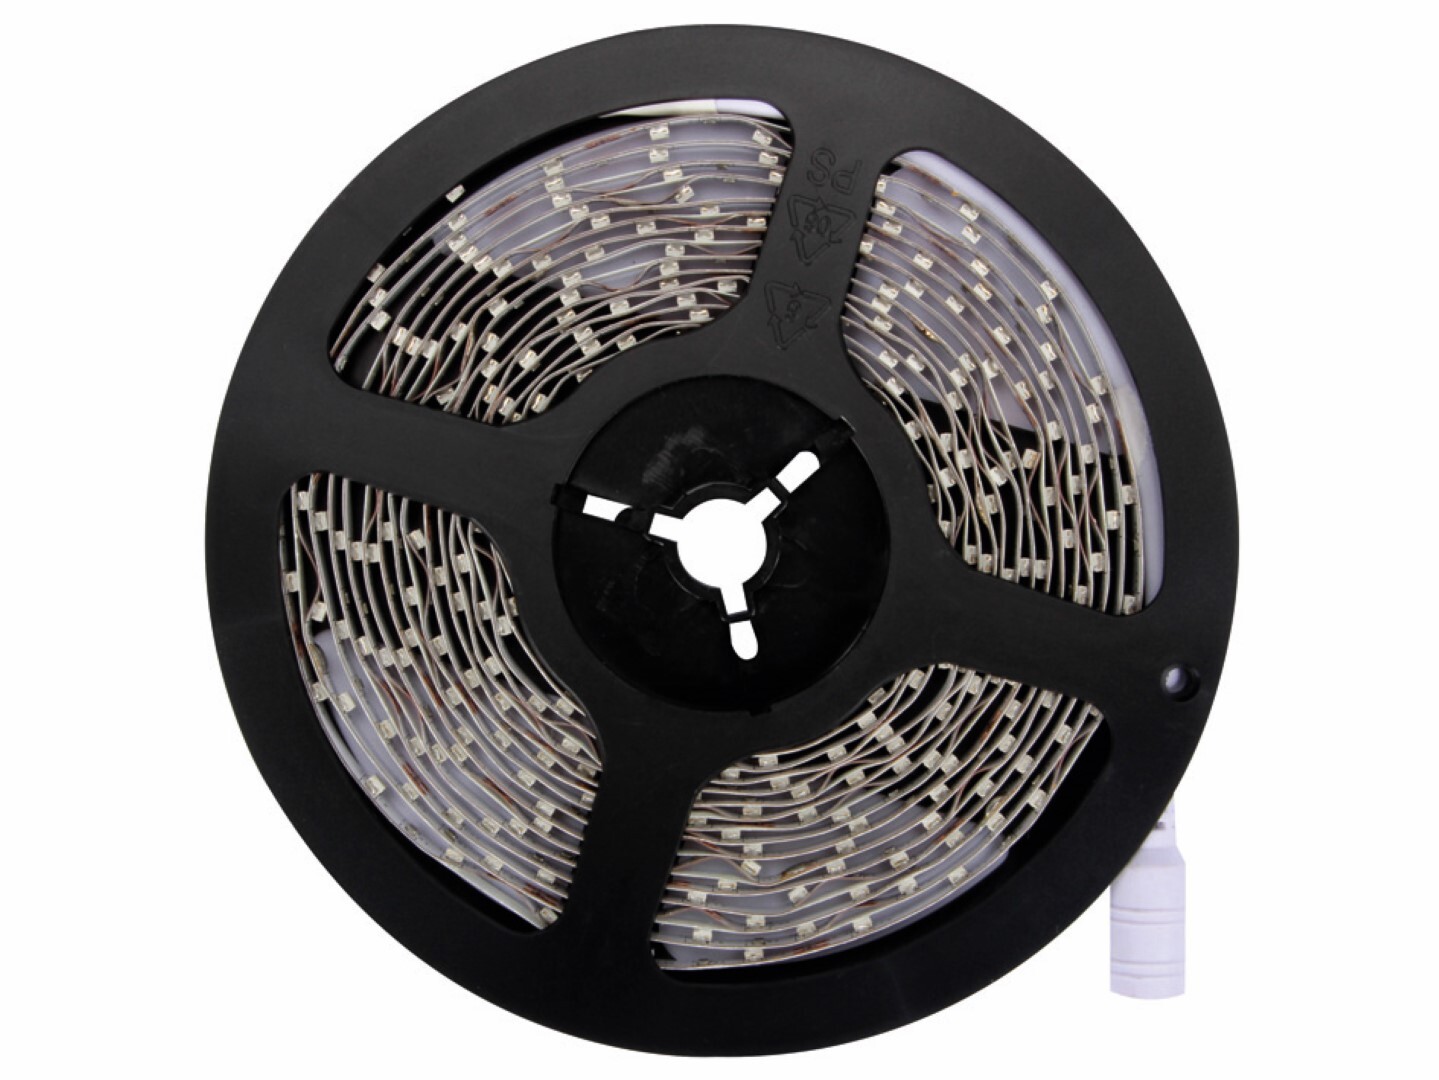 Vellight KIT MET FLEXIBELE LED-STRIP EN VOEDING - KOUDWIT - 180 LEDS - 3 m - 12 VDC